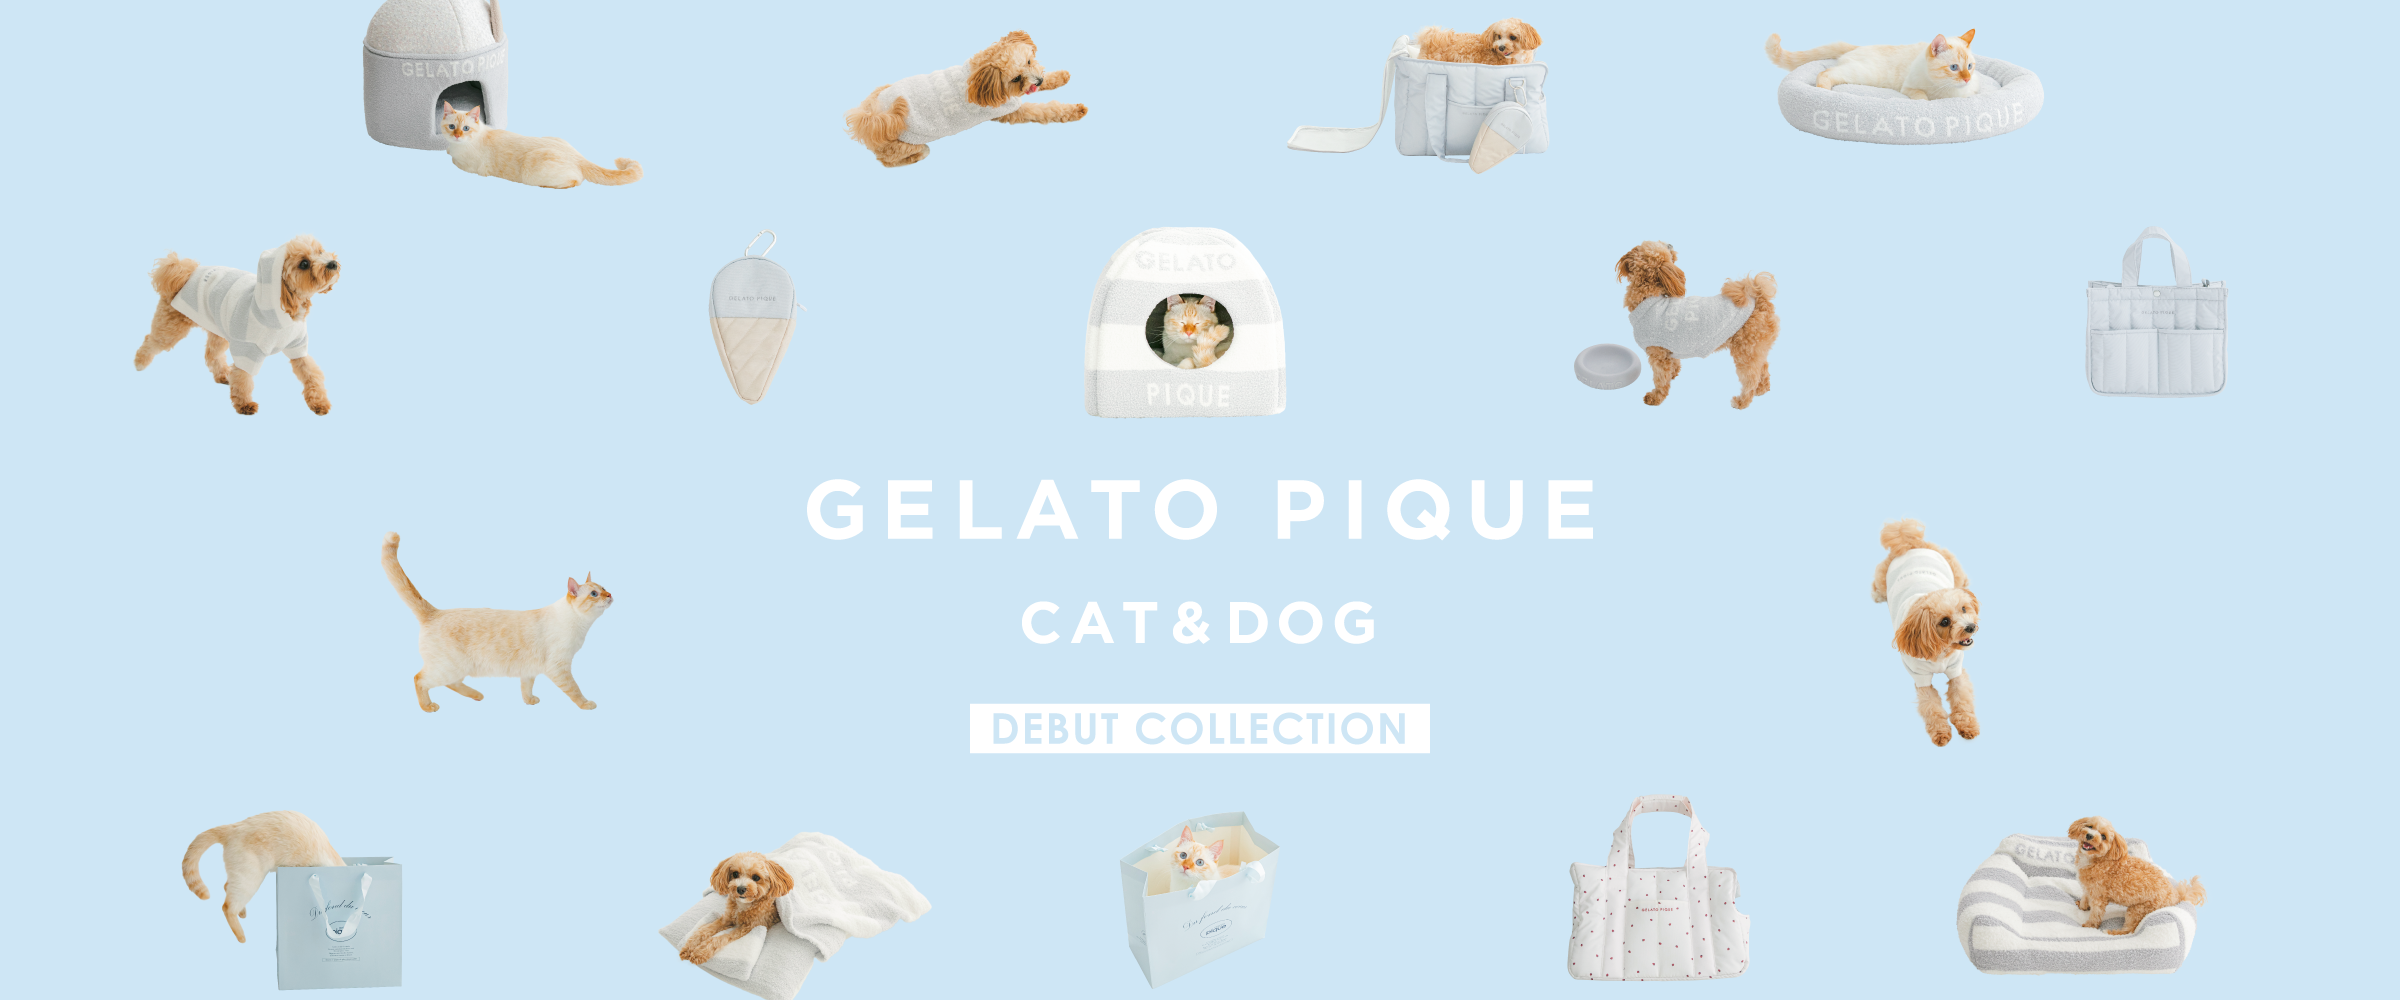 Gelato Pique Cat & Dog